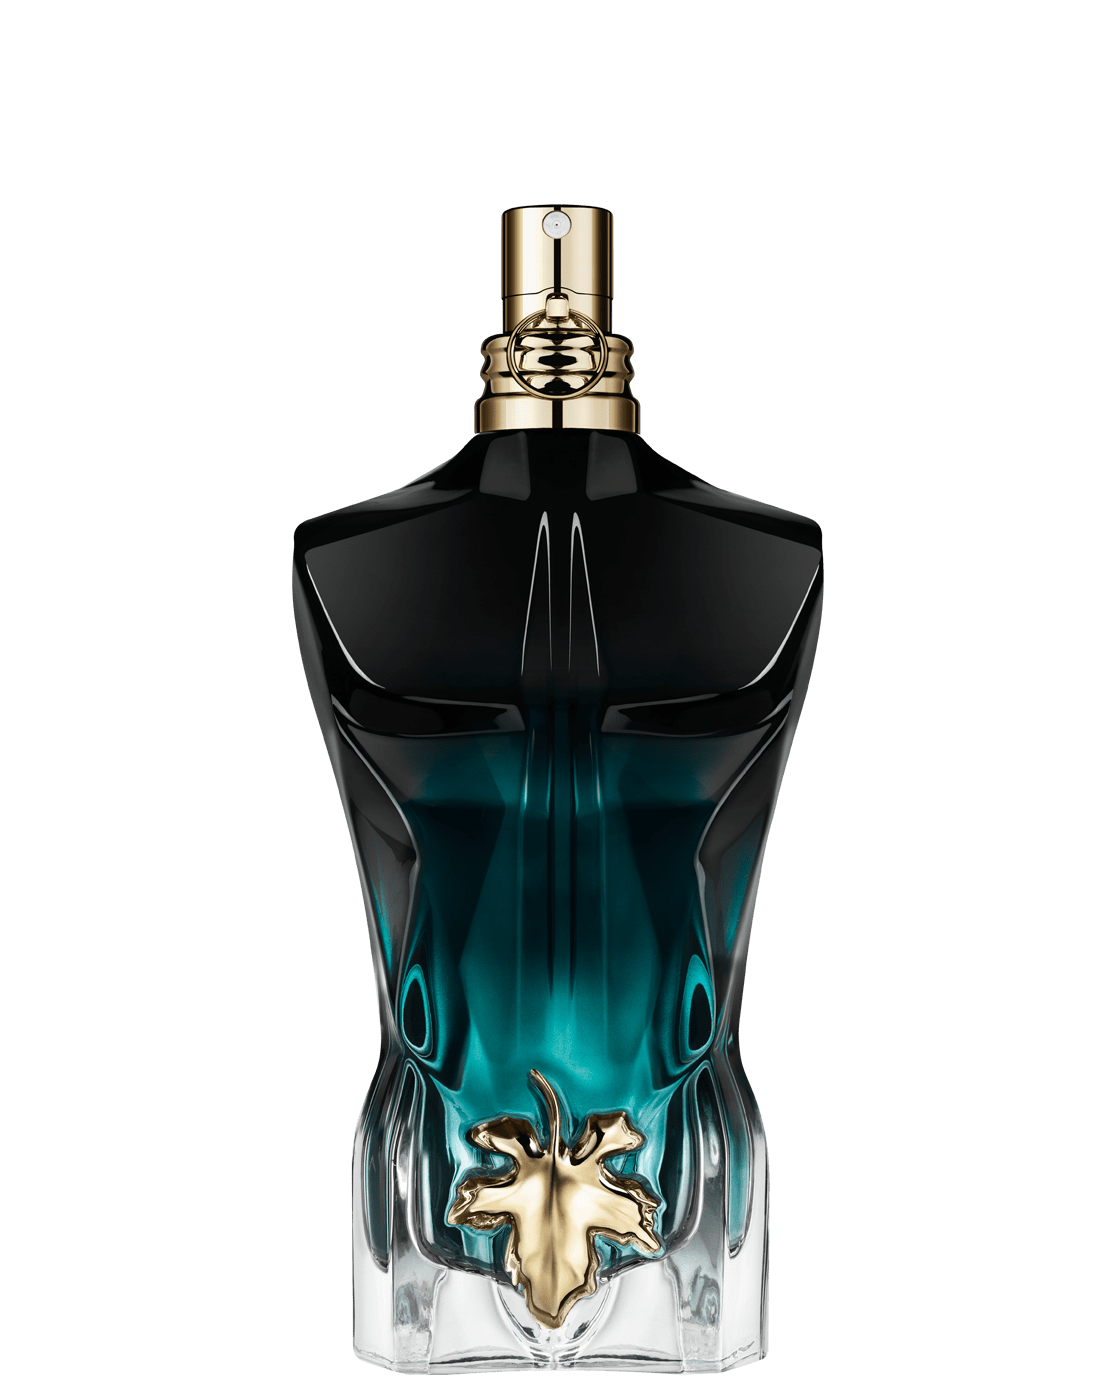 botanist legemliggøre indarbejde Le Beau Le Parfum Eau de Parfum Intense for Men | Jean Paul Gaultier